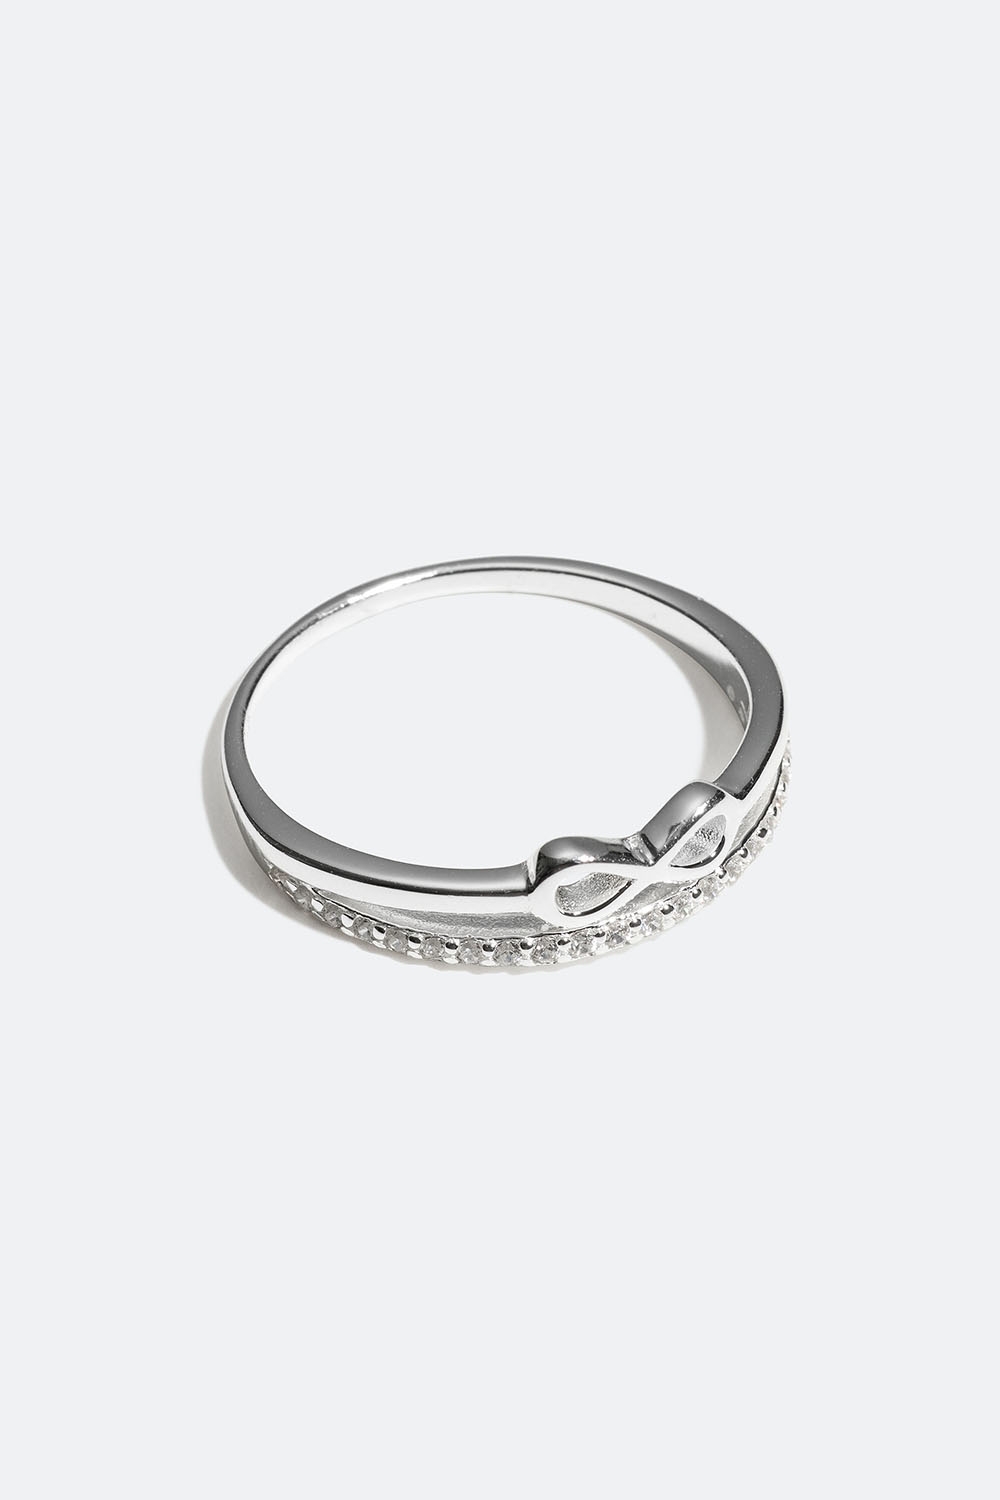 Ring i ekte sølv med uendelighetsssymbol i gruppen Ekte sølv / Sølvringer / Sølv hos Glitter (55600070)